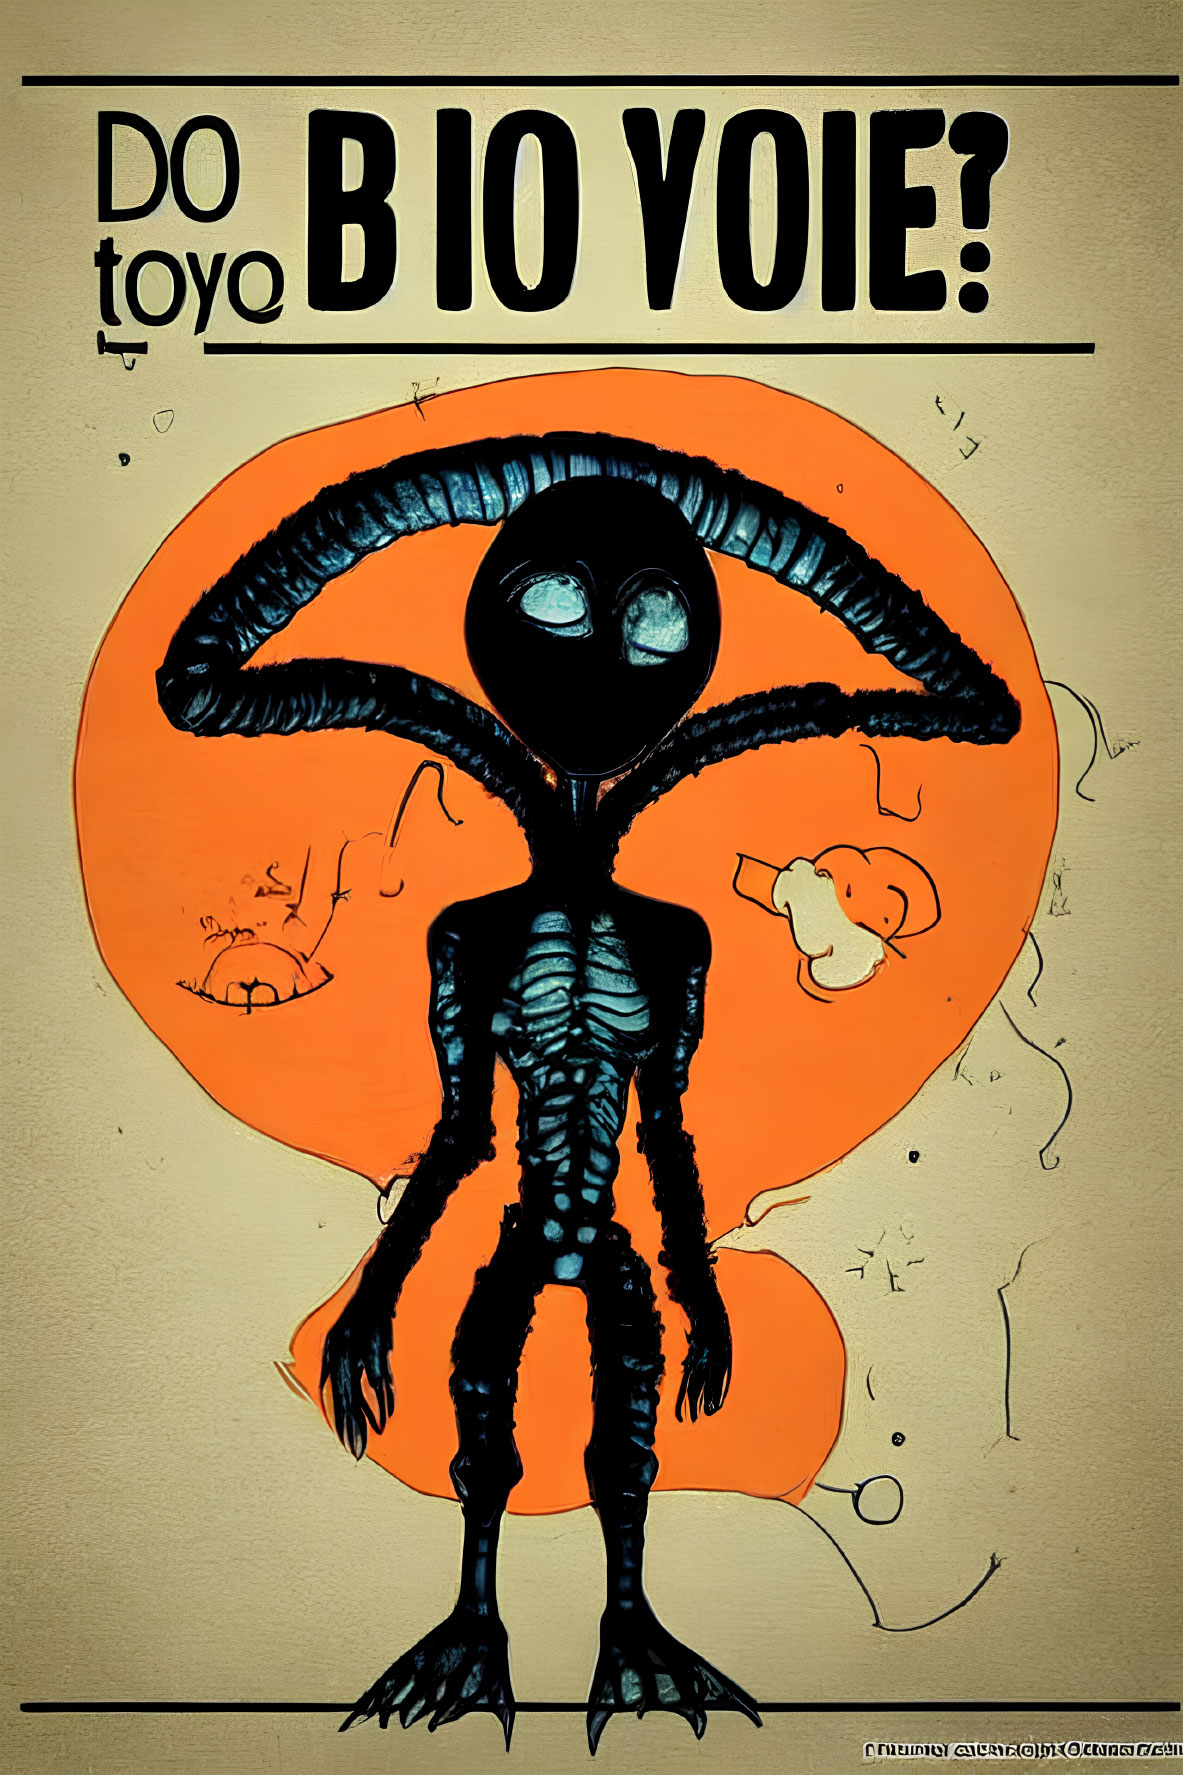 Stylized alien illustration with large eyes on orange backdrop